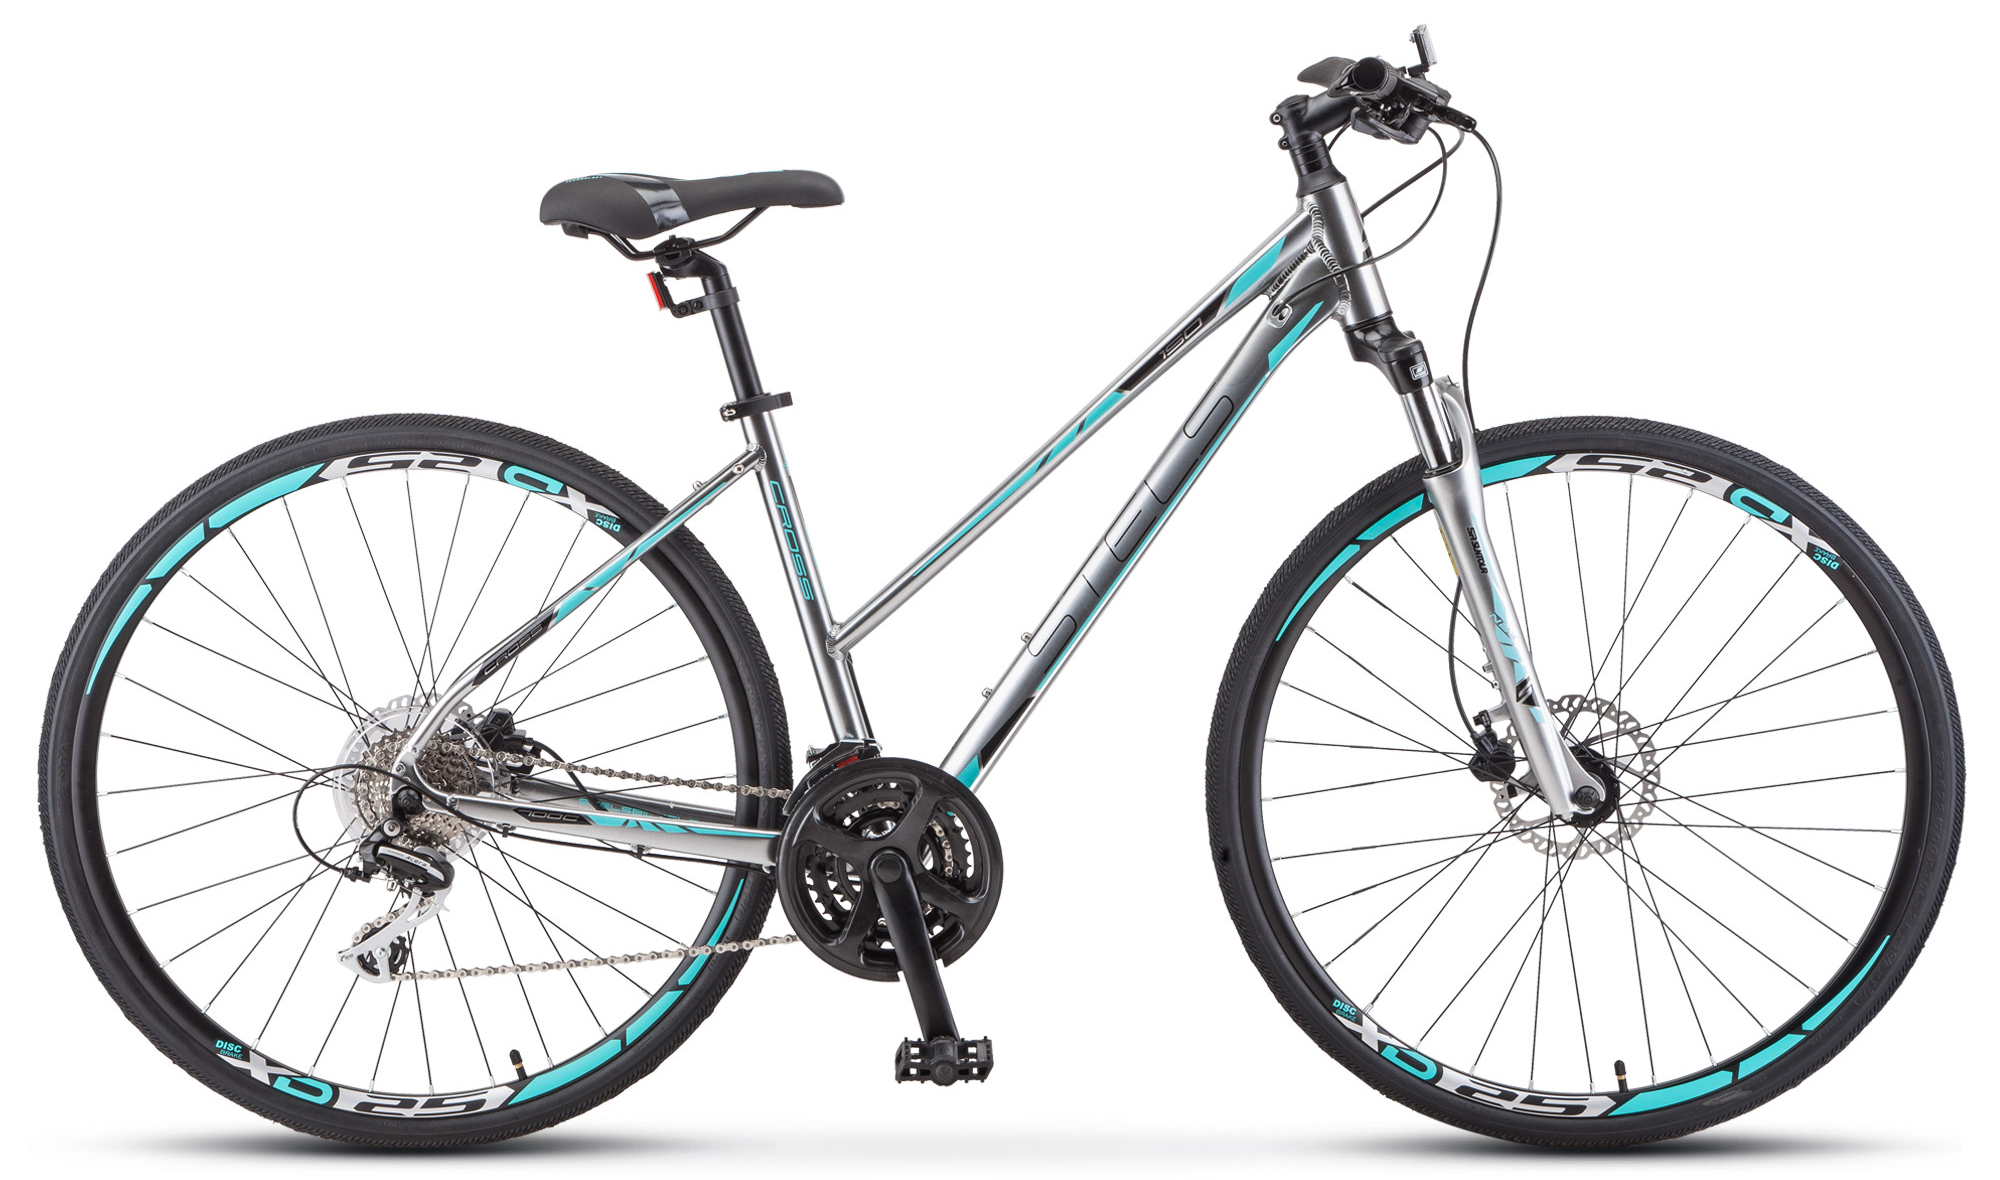  Велосипед Stels Cross 150 D Lady V010 2019